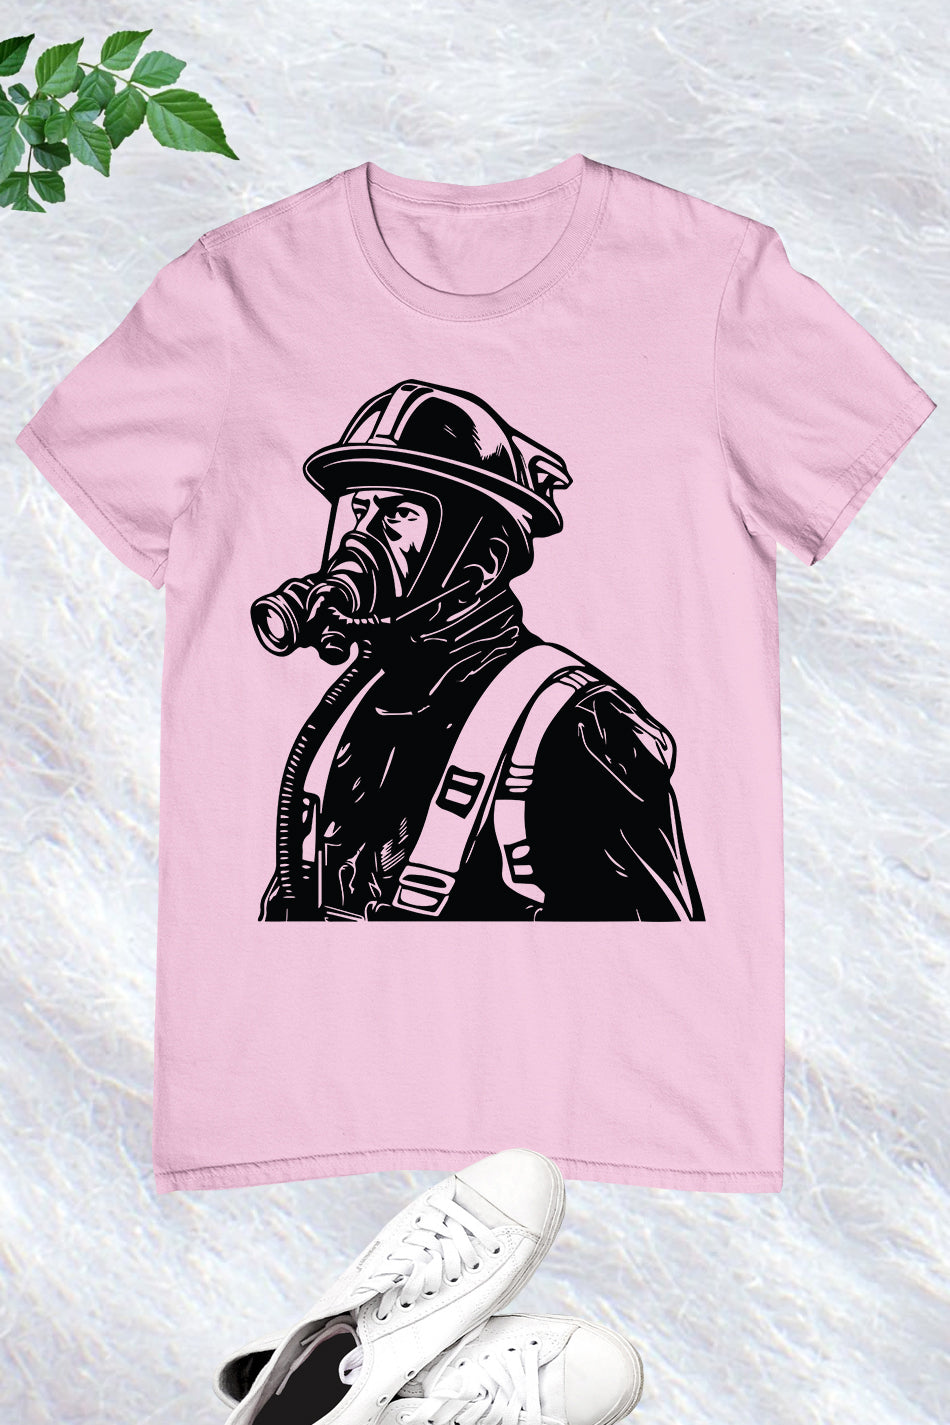 Fire Service T Shirt